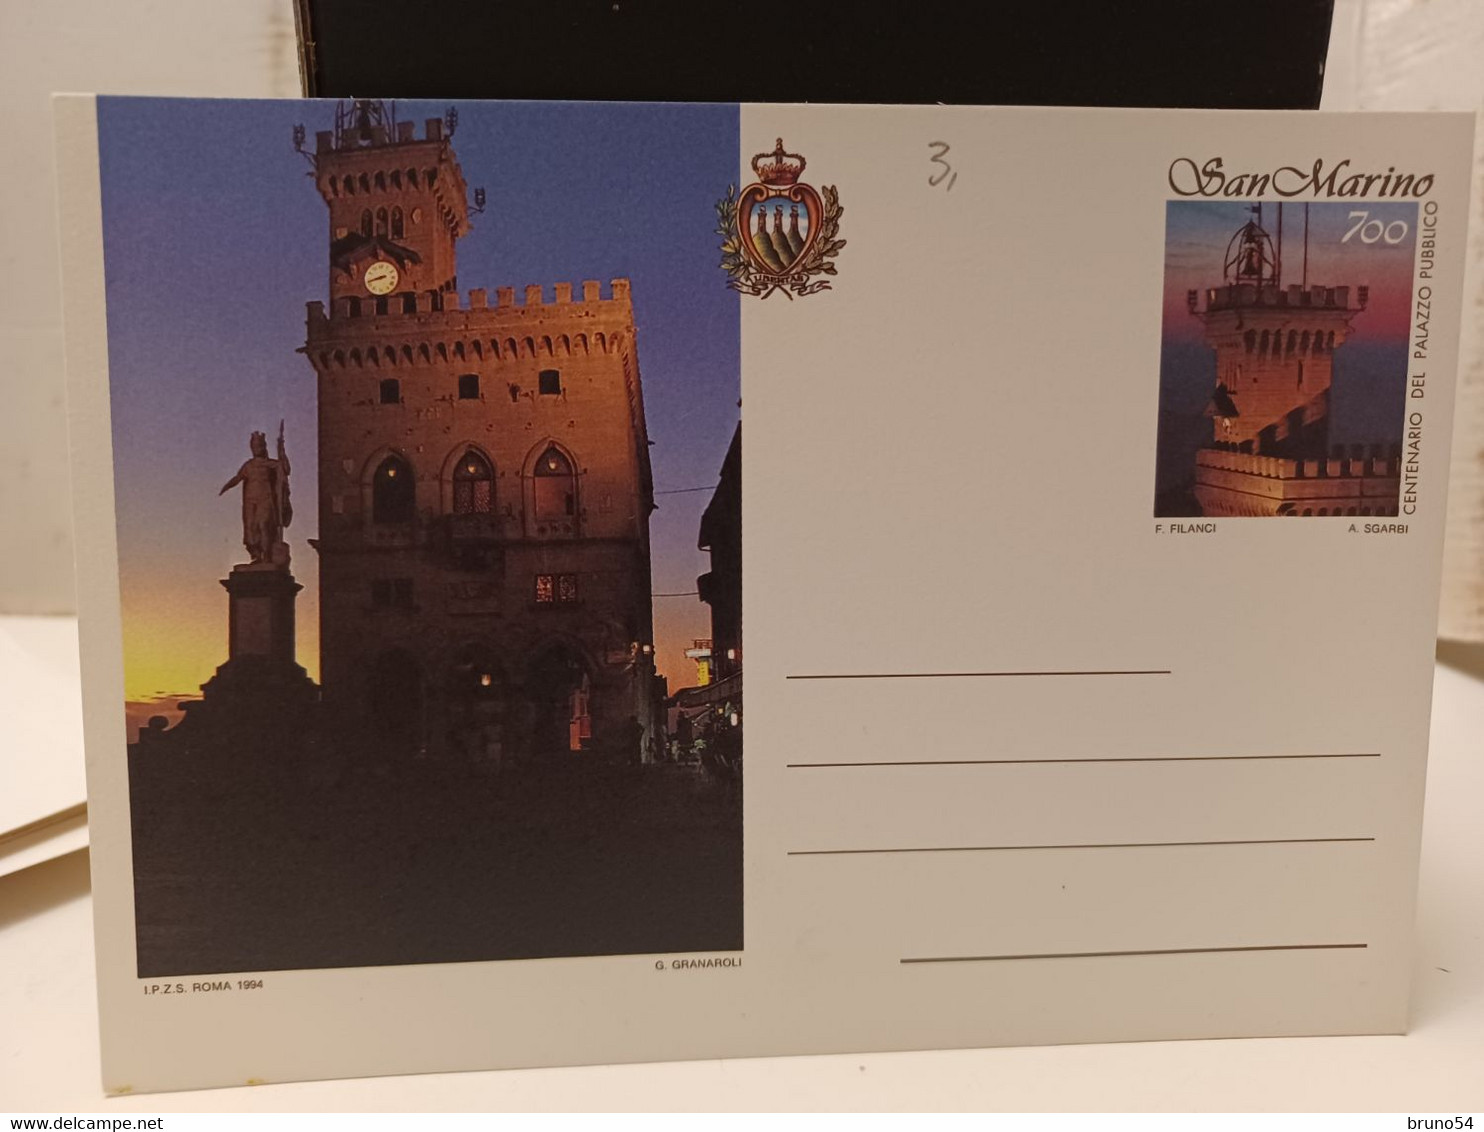 22 interi postali, cartolina postale  San Marino fine anni 70 in poi